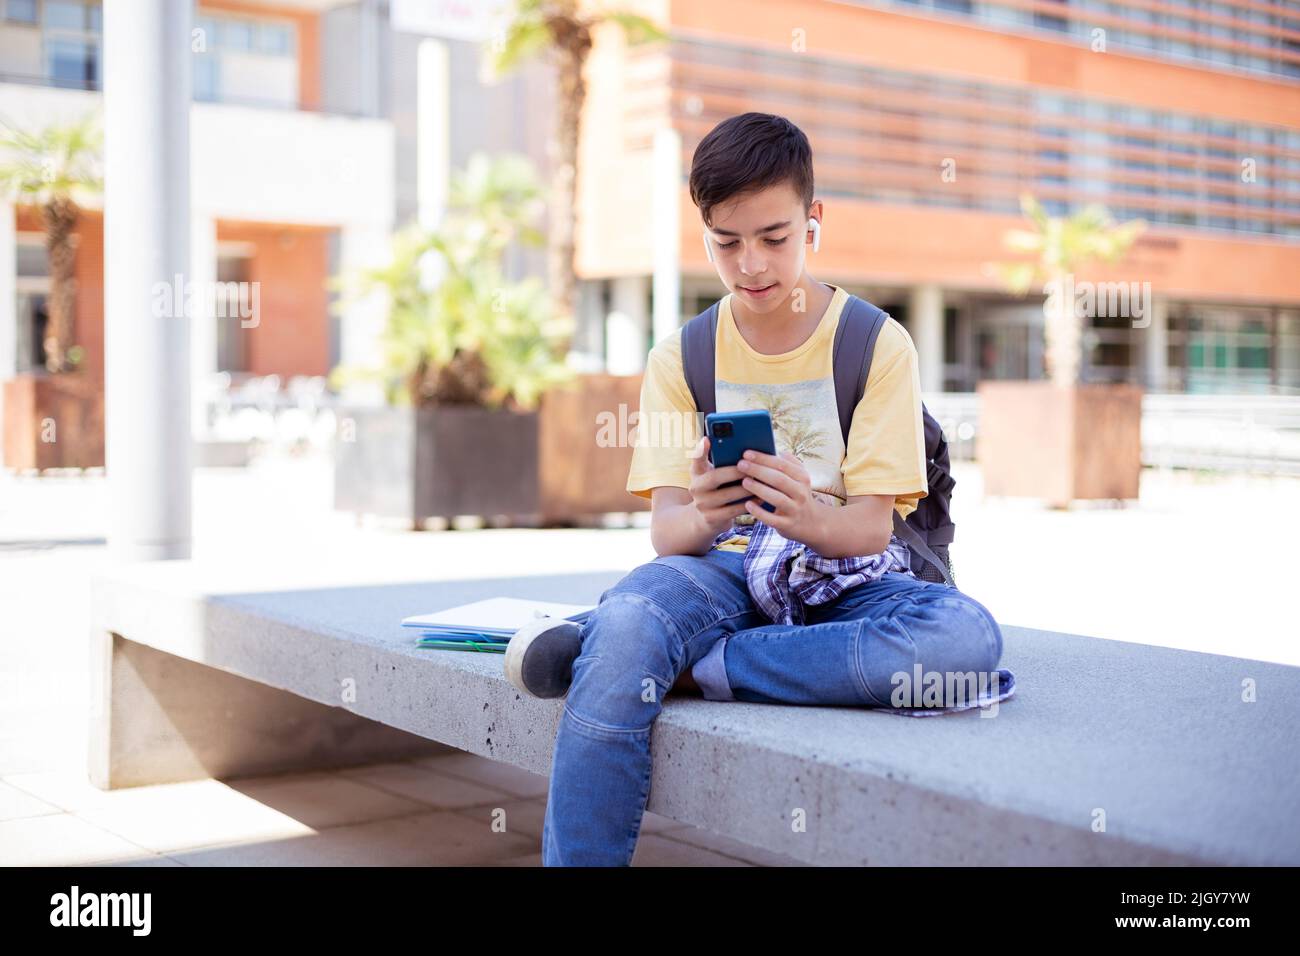 Un adolescent de race blanche utilisant un smartphone à l'extérieur. Espace pour le texte. Banque D'Images